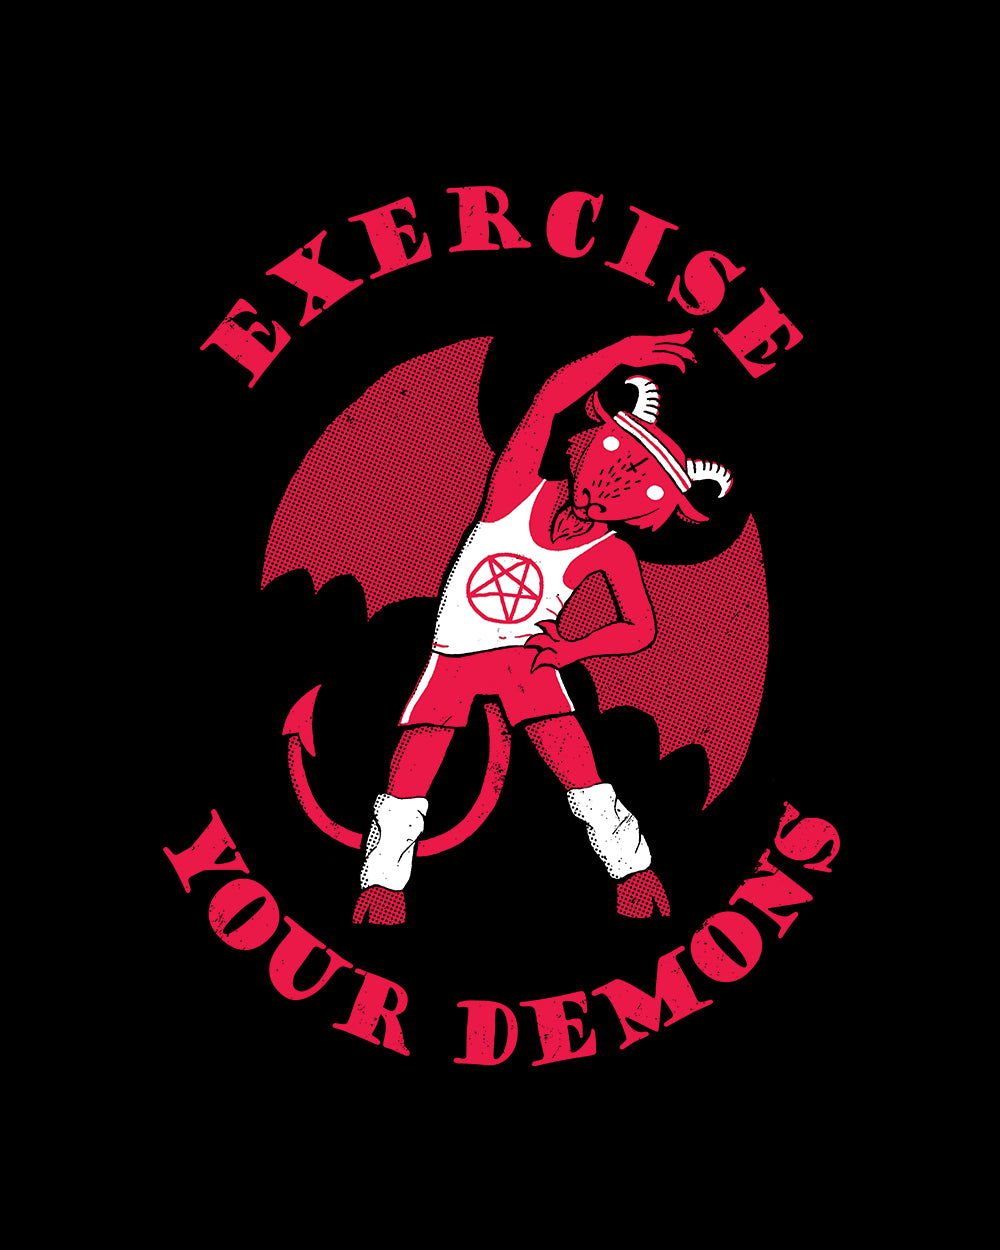 Exercise Your Demons T-Shirt Australia Online #colour_black